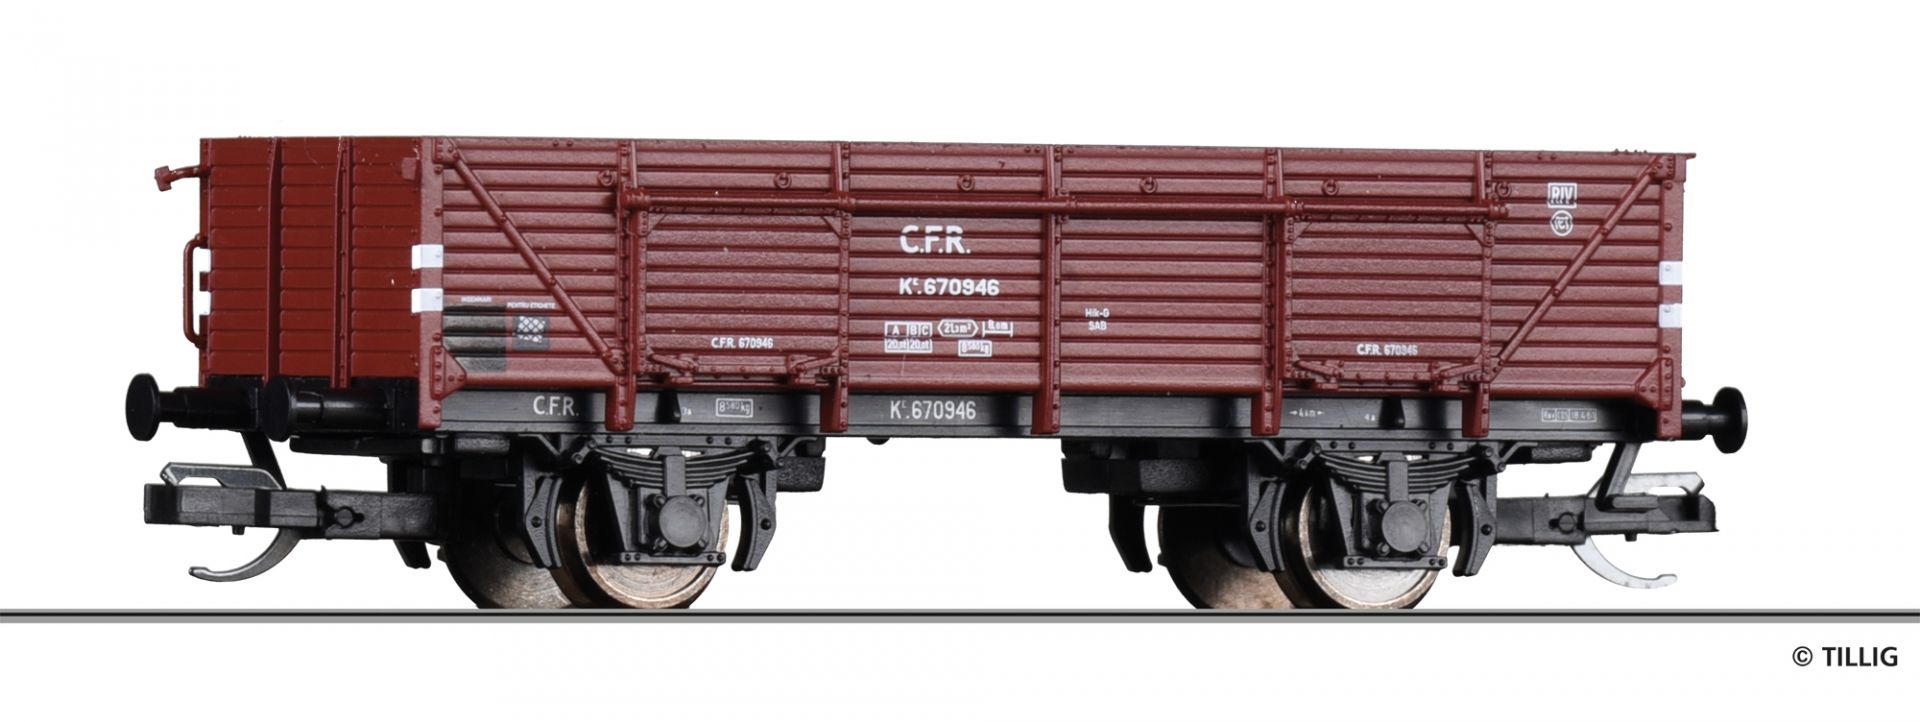 17634 | Offener Güterwagen CFR